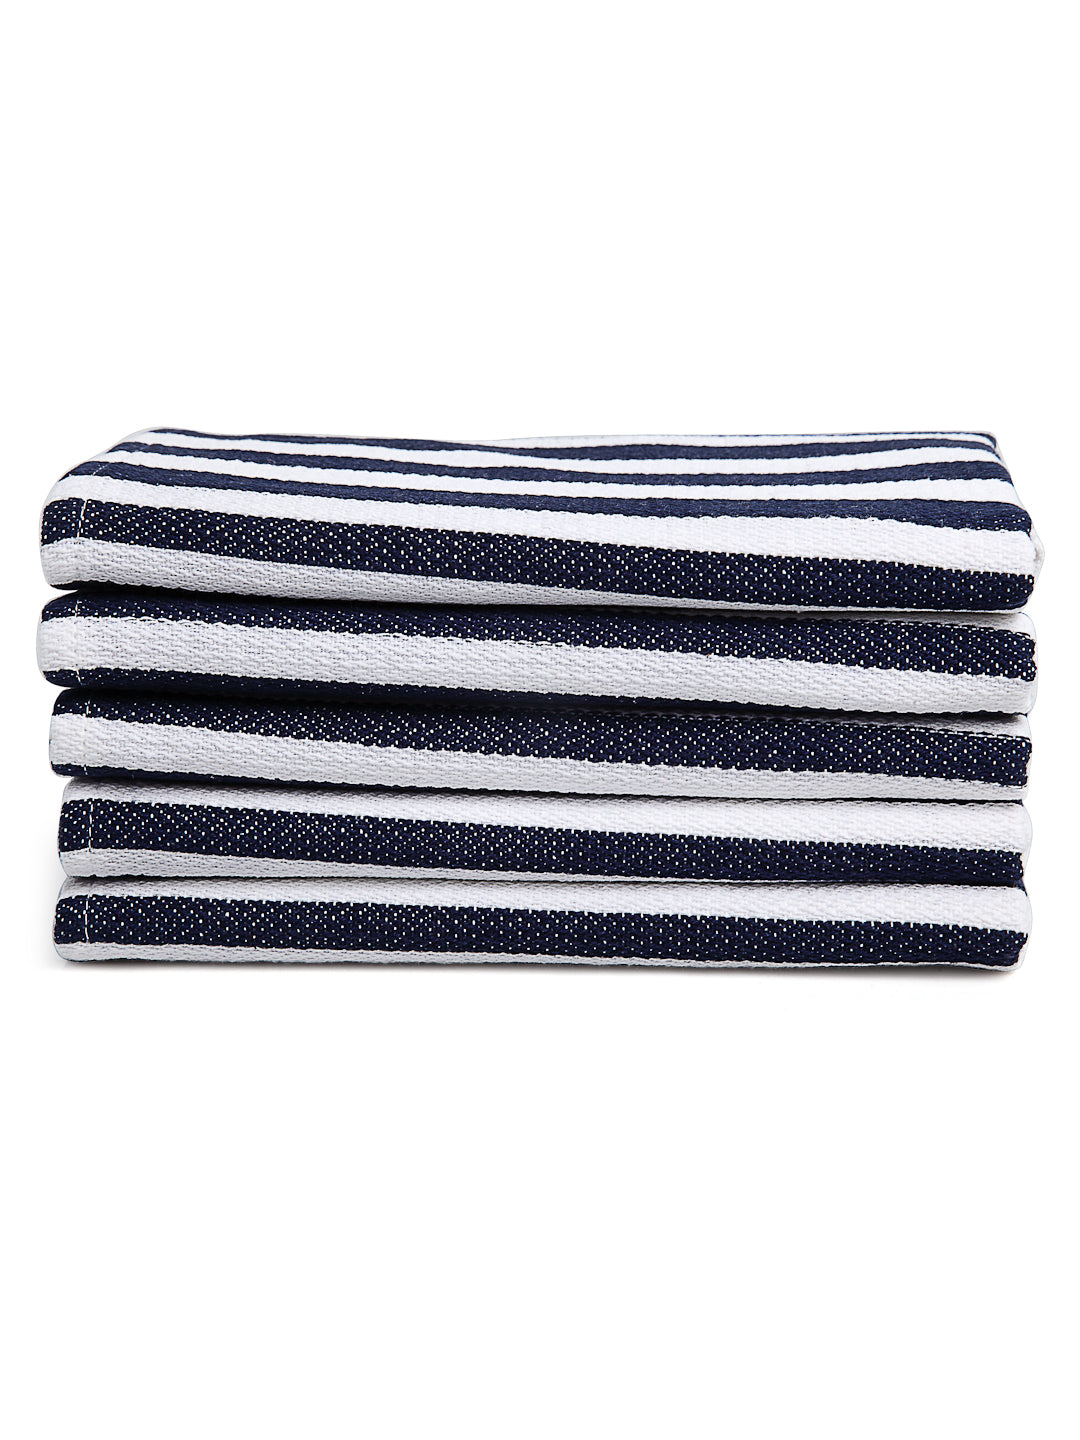 Arrabi Blue Stripes Handwoven Cotton Hand Towel (Set of 5) (85 X 35 cm)